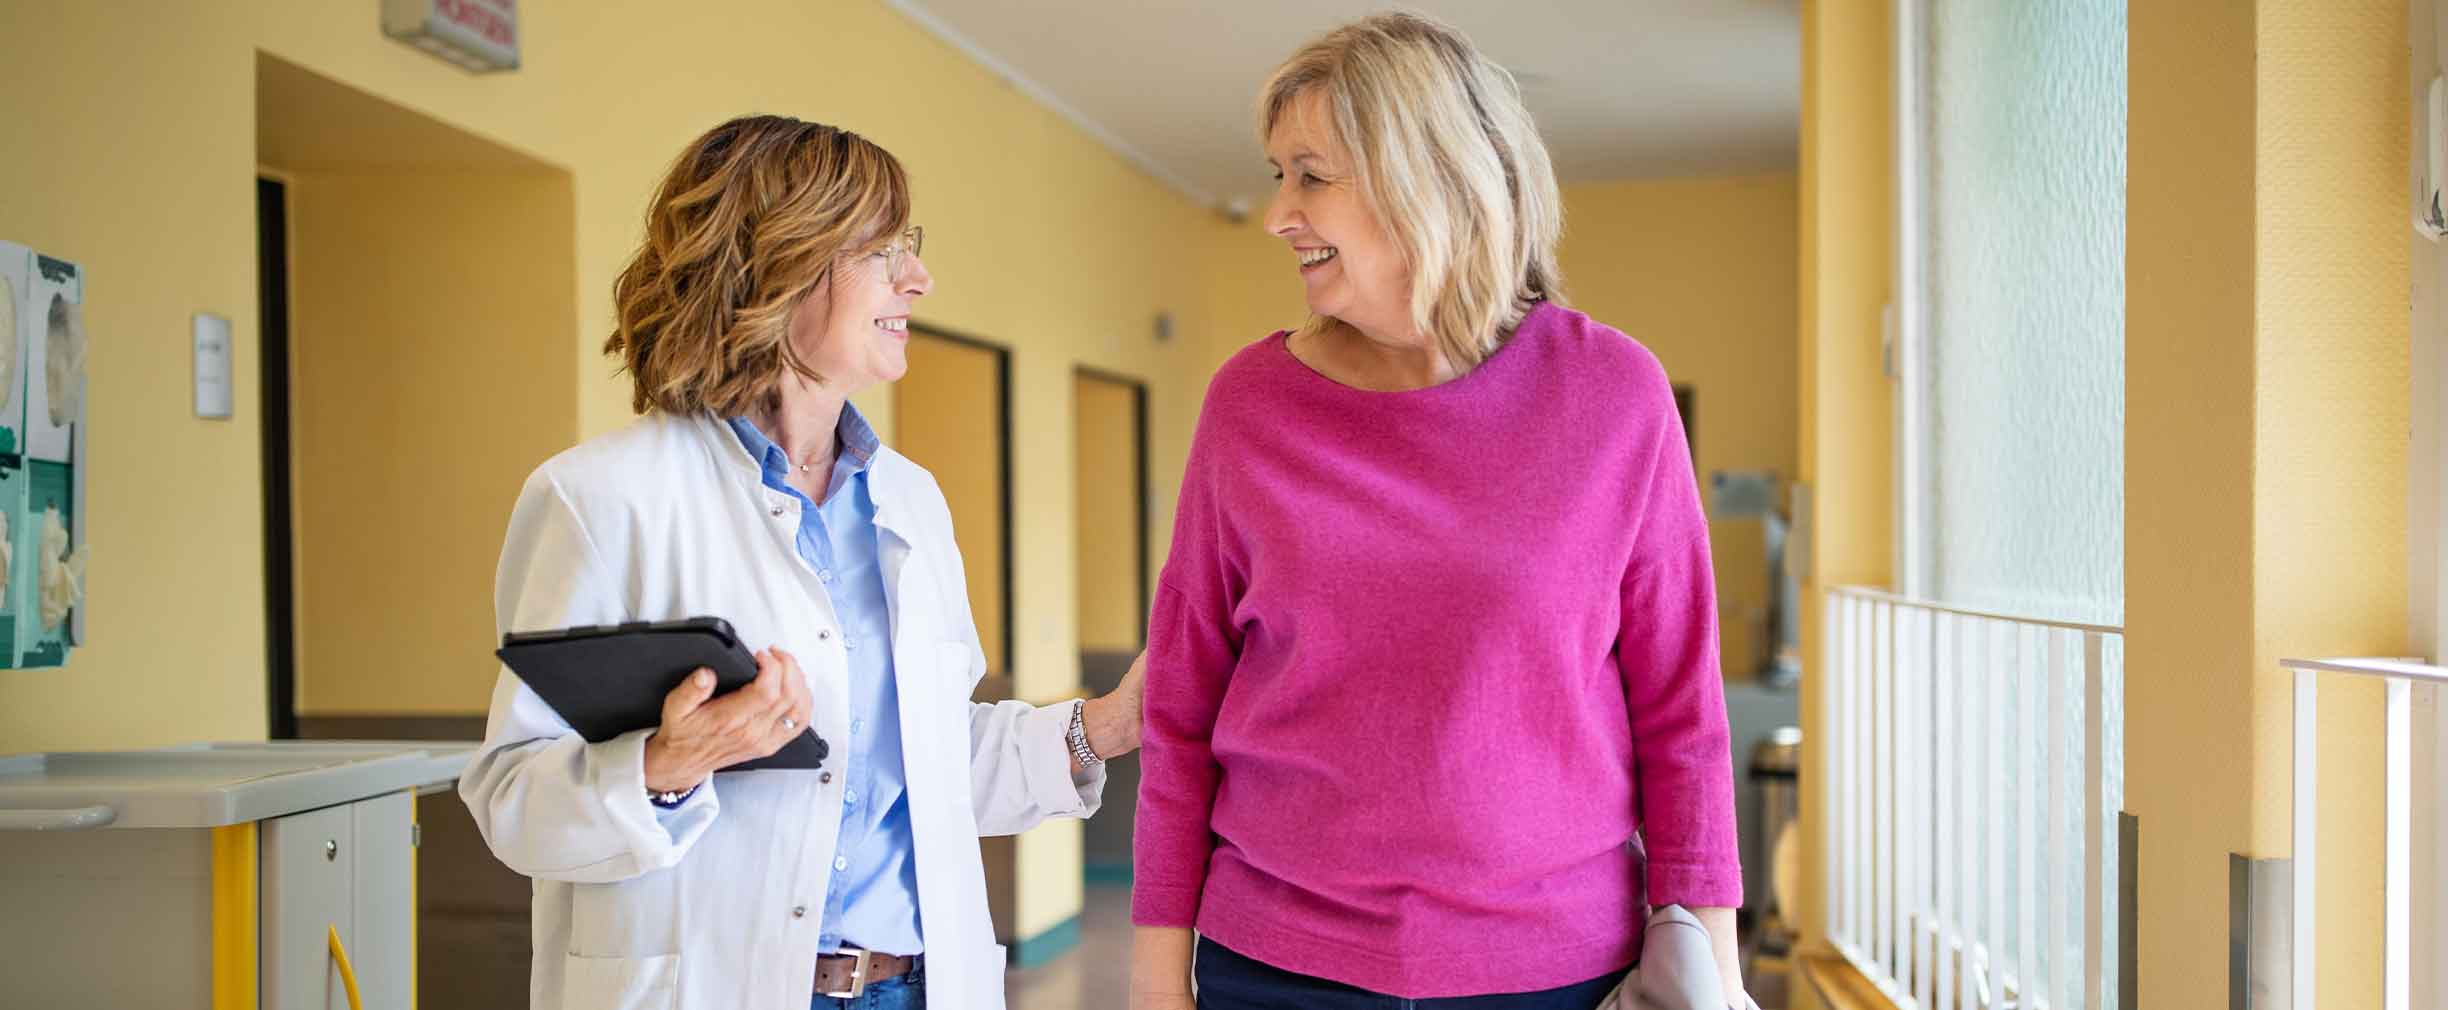 Una médica con bata de laboratorio blanca hablando con su paciente mientras camina por el pasillo.